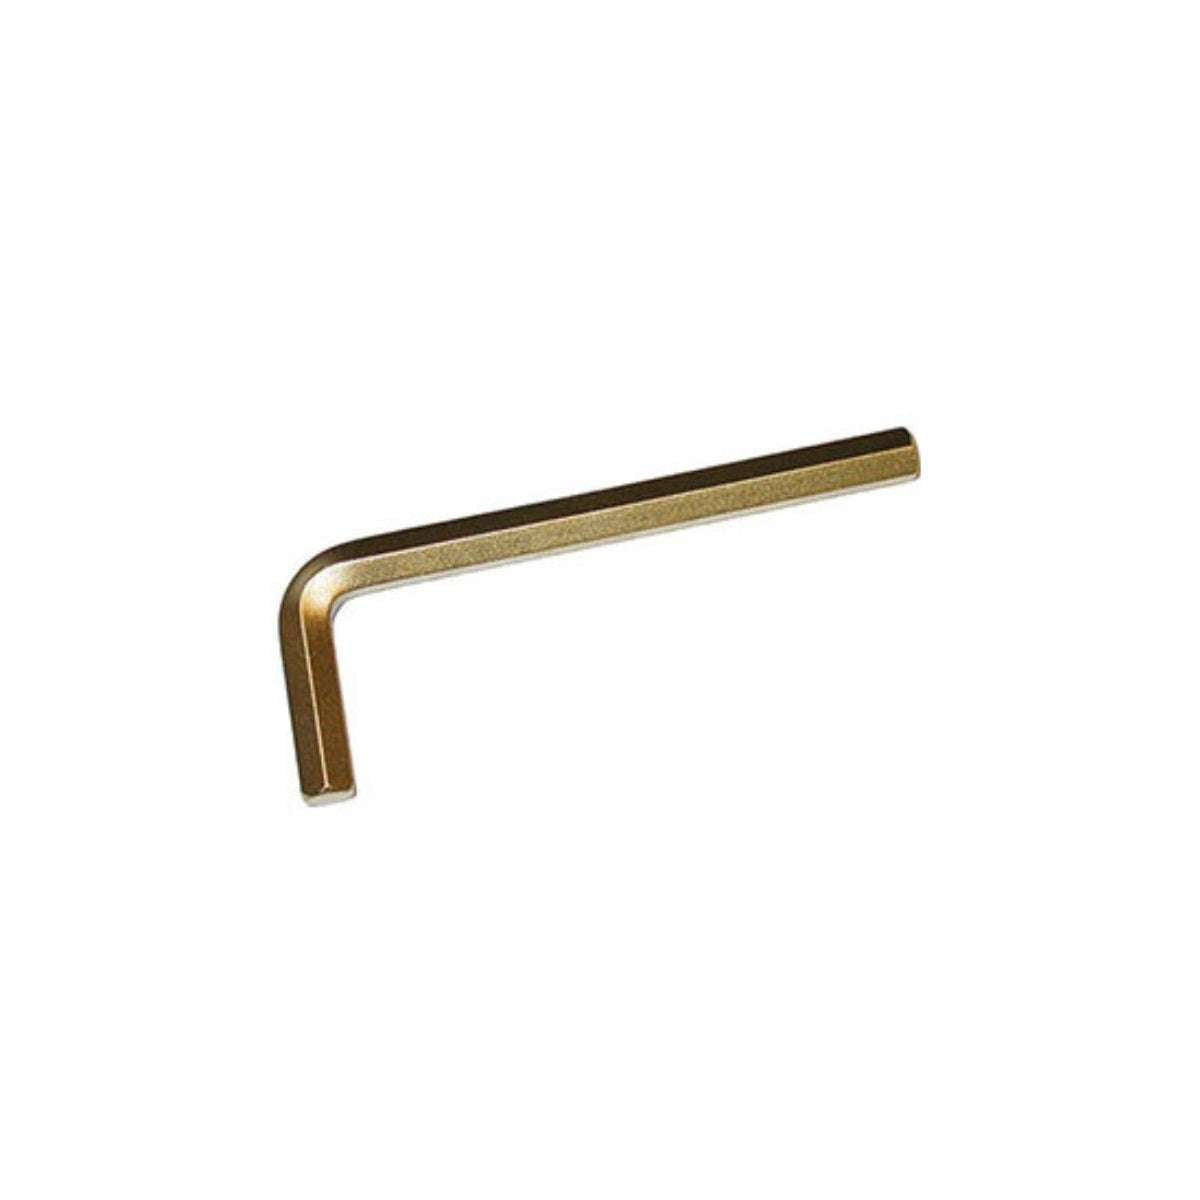 Chiave esagonale antiscintilla in lega bronzo-alluminio - Sicutool 9922